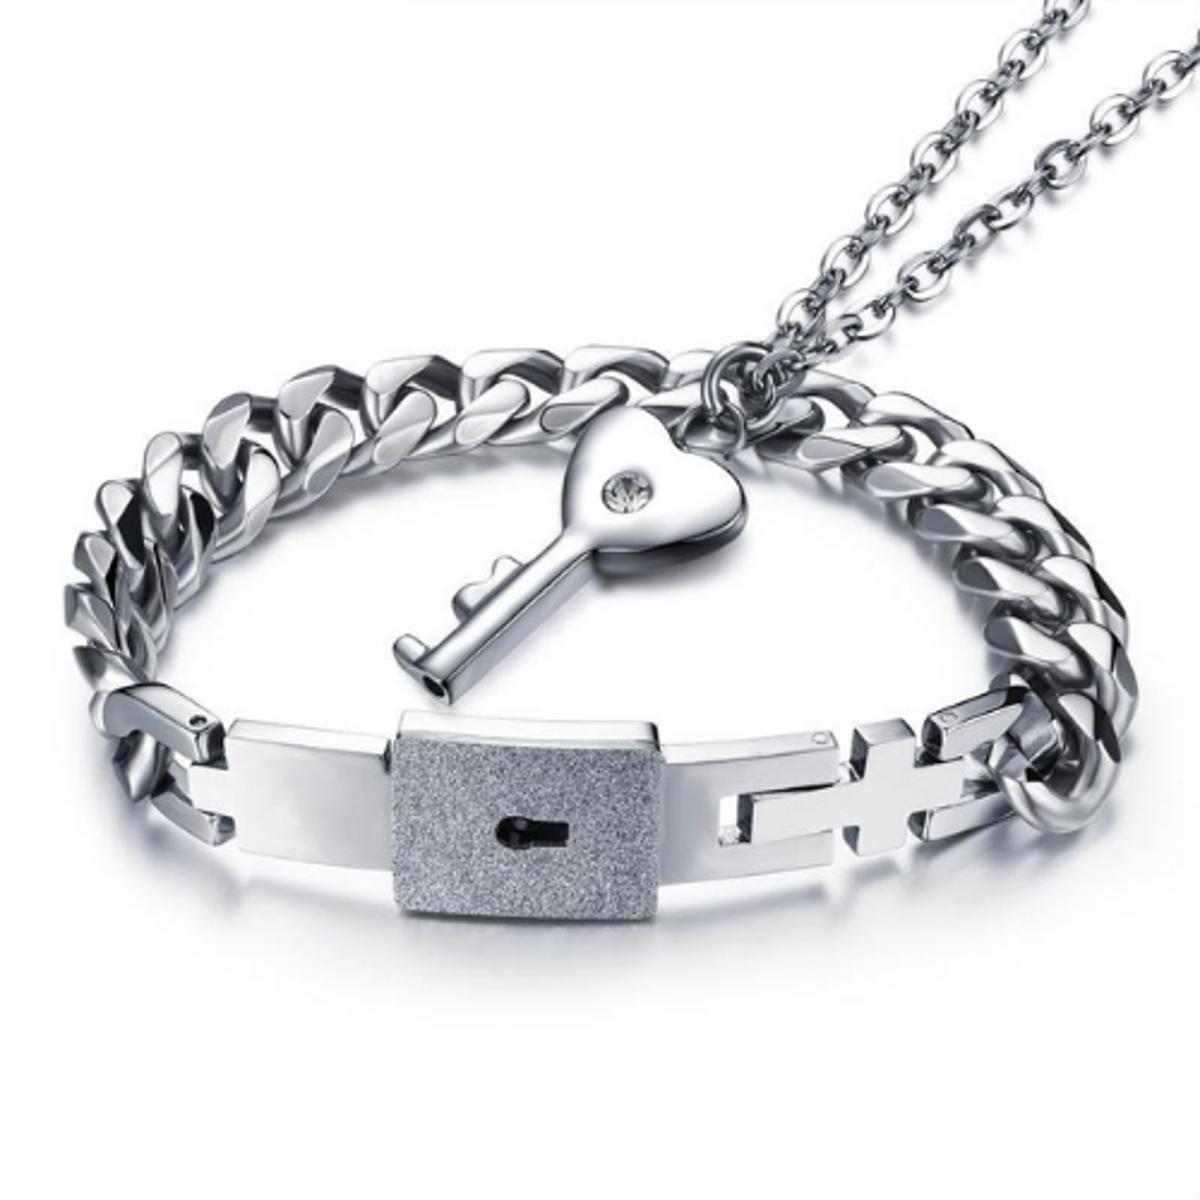 Love Lock Key Bracelet Pendant Online In Pakistan – The Dapper Shop